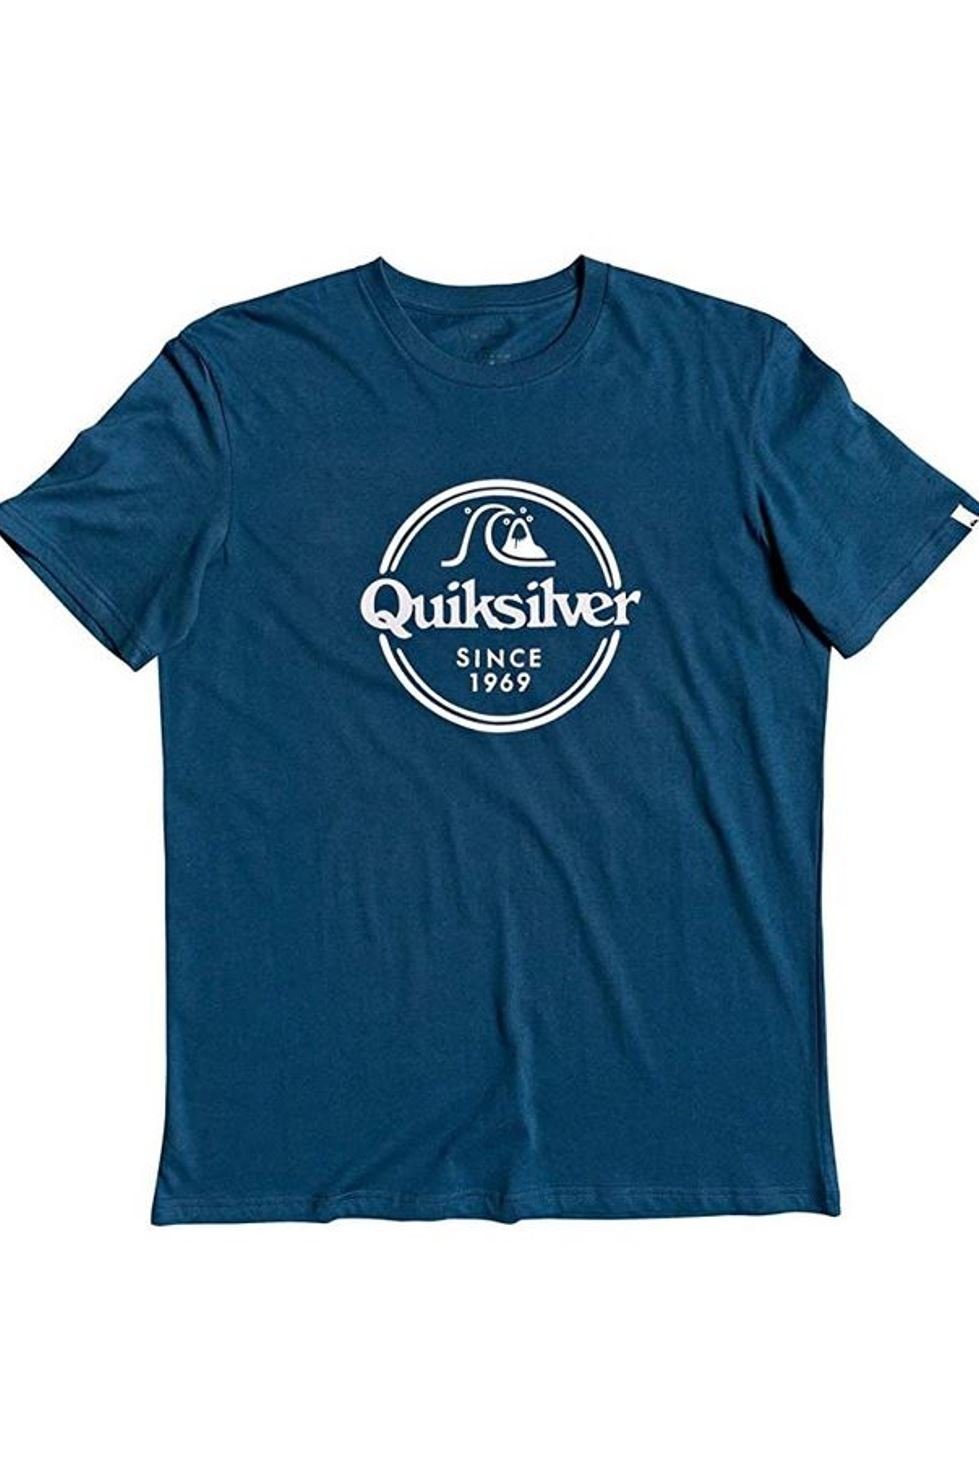 Quiksilver Herren Remain Words blau Funktionsshirt, Shirt Quiksilver